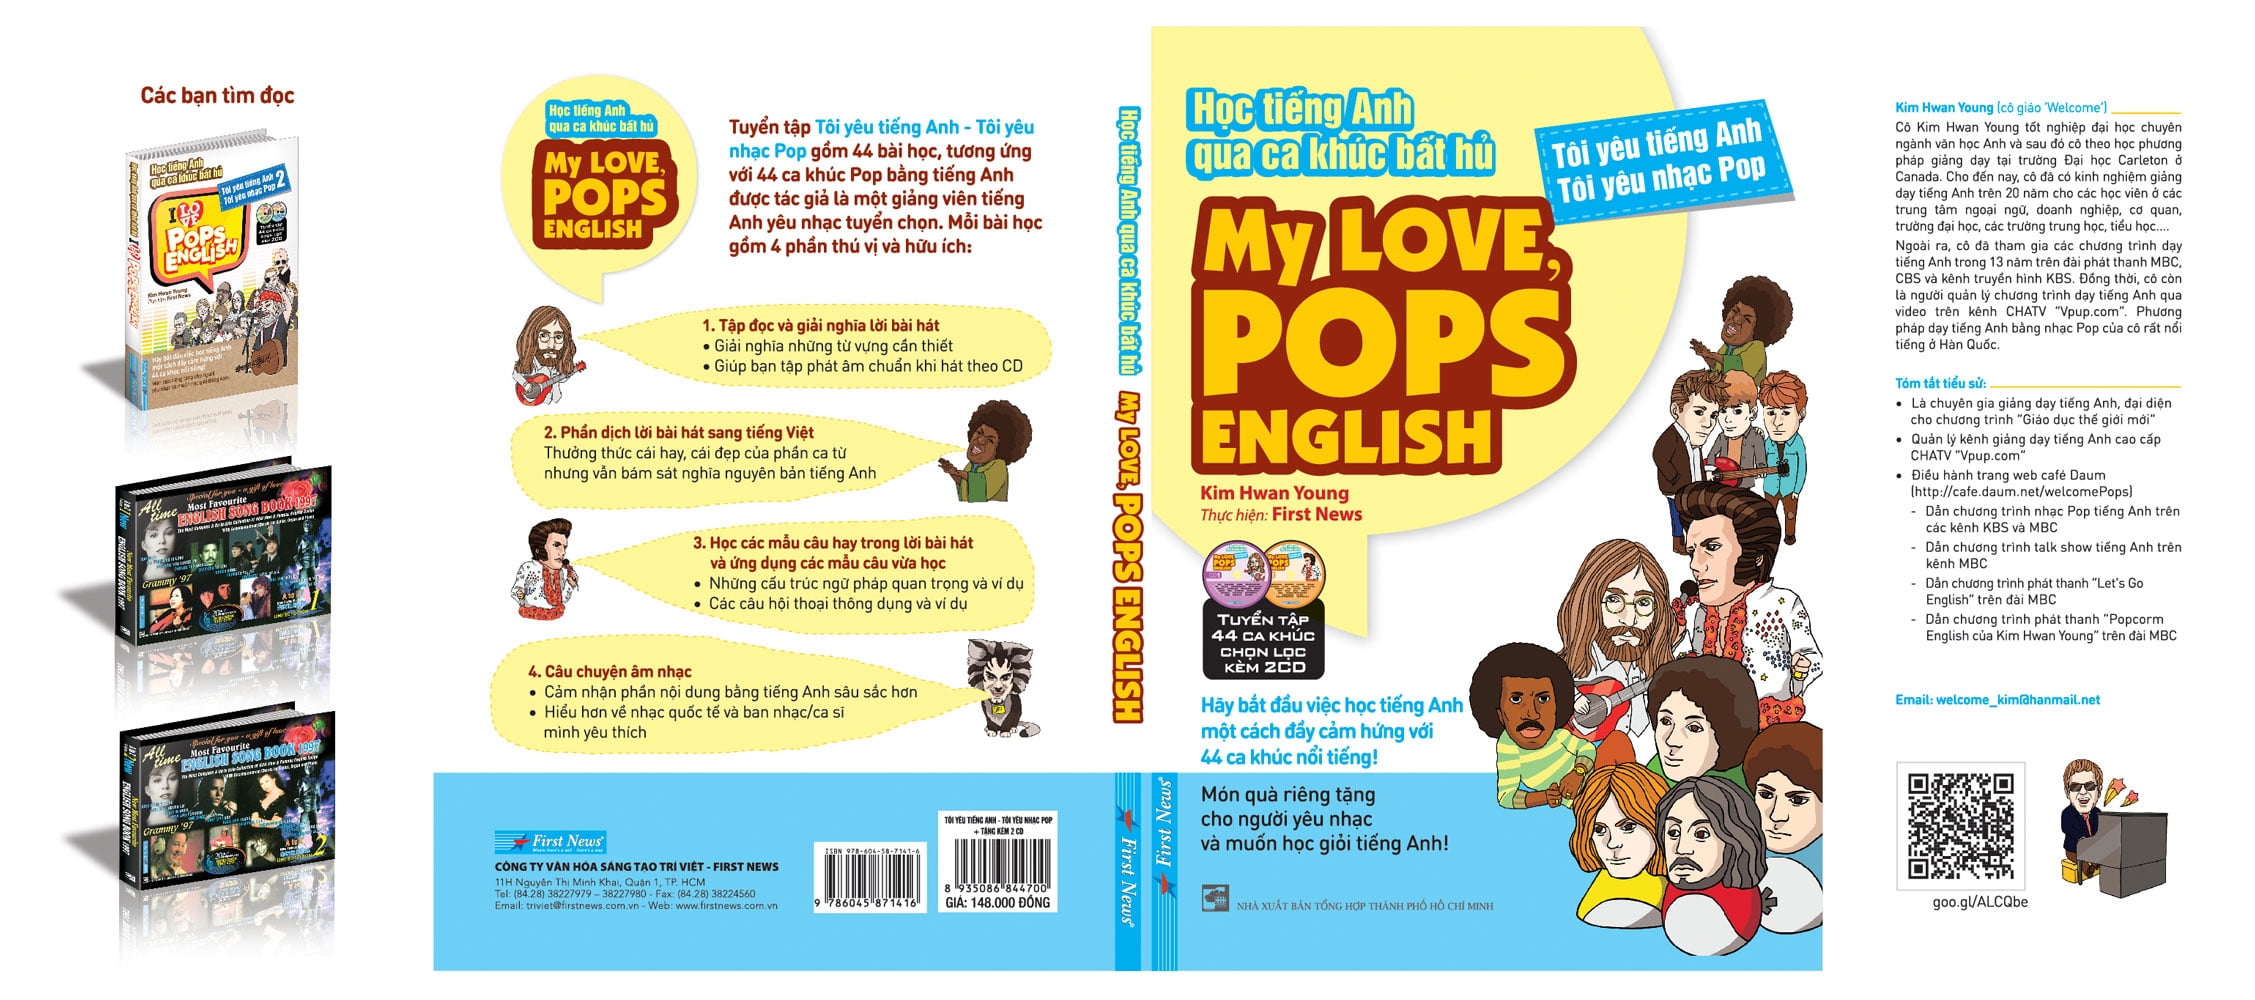 Học Tiếng Anh Qua Ca Khúc Bất Hủ - My Love, Pops English PDF